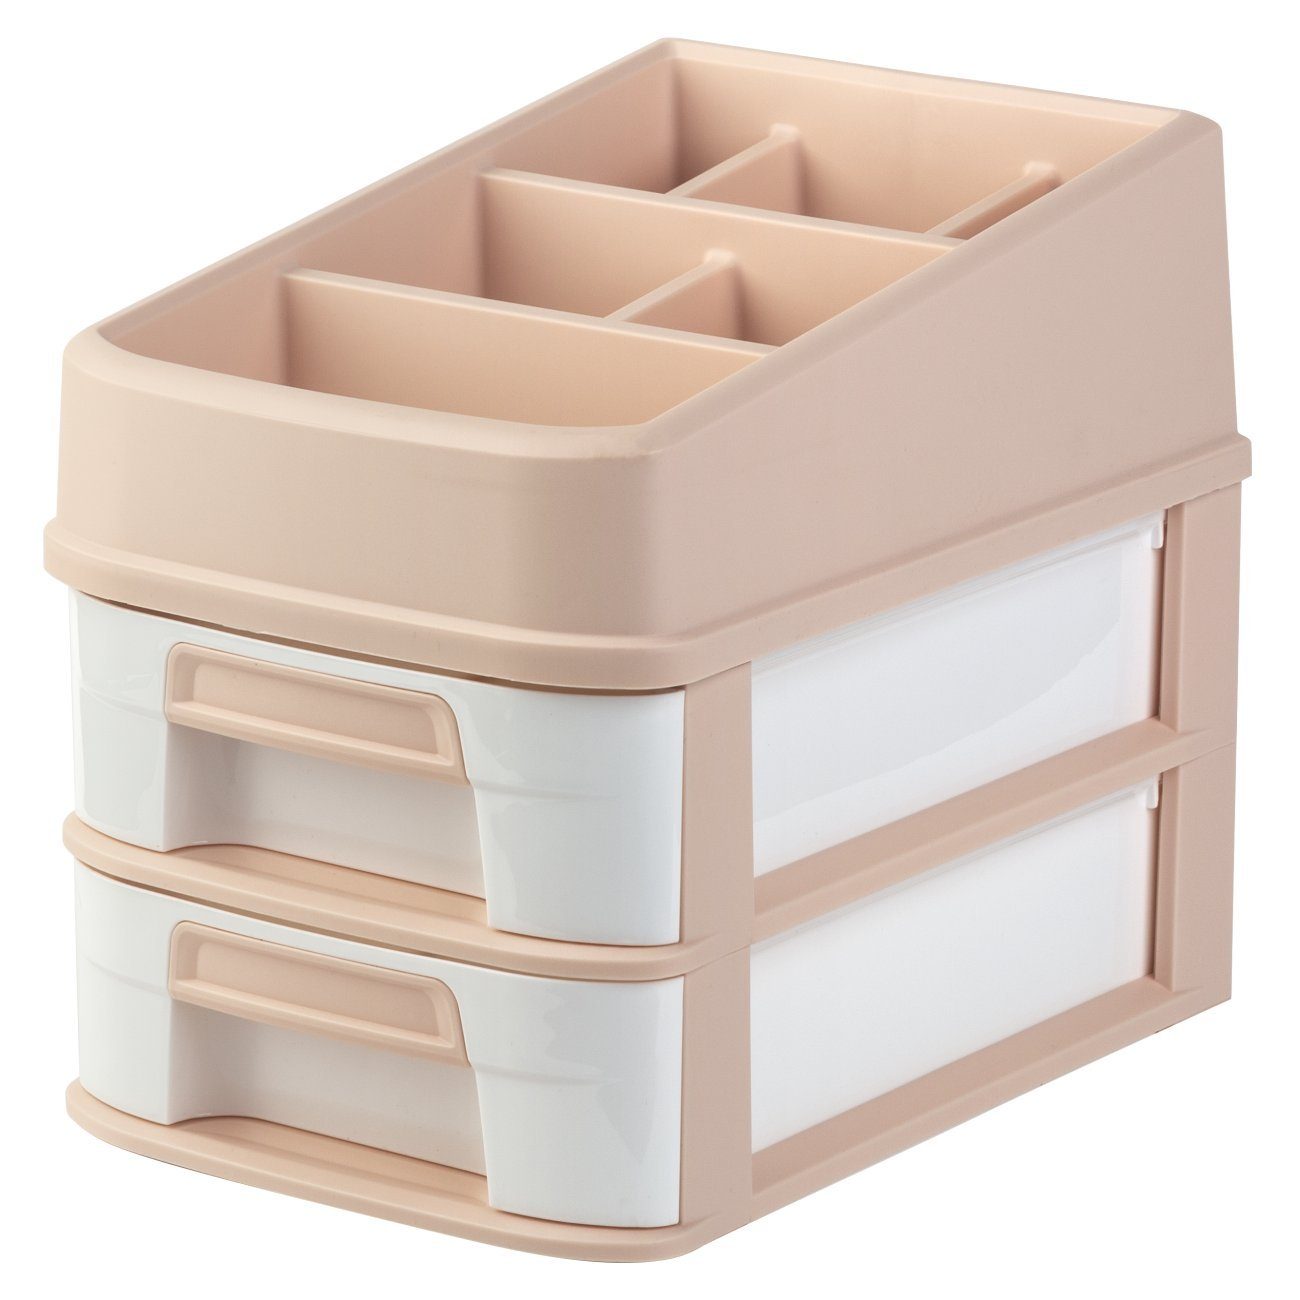 Engelland Organizer Multifunktions-Organizer mit Schubladen (Vorteils-Set, Aufbewahrungsbox), universell einsetzbar, robuster Kunststoff Apricot/Weiß